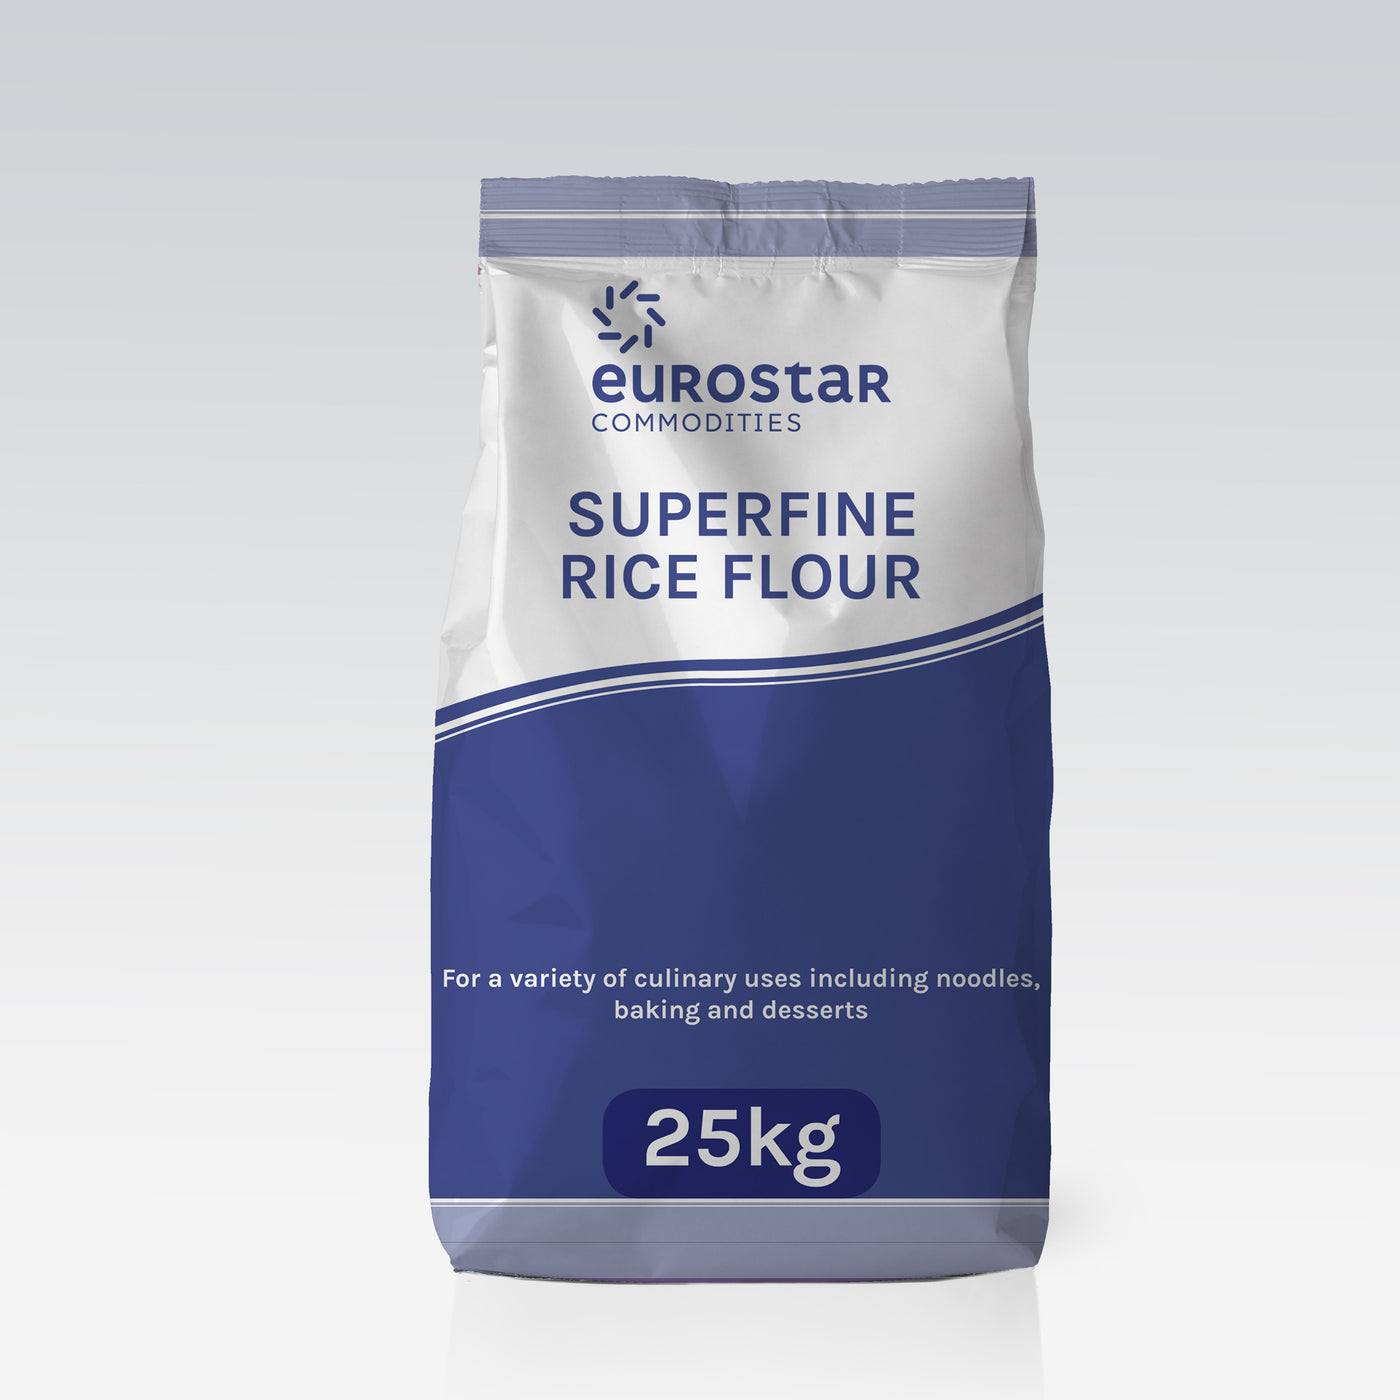 Eurostar Superfine Rice Flour